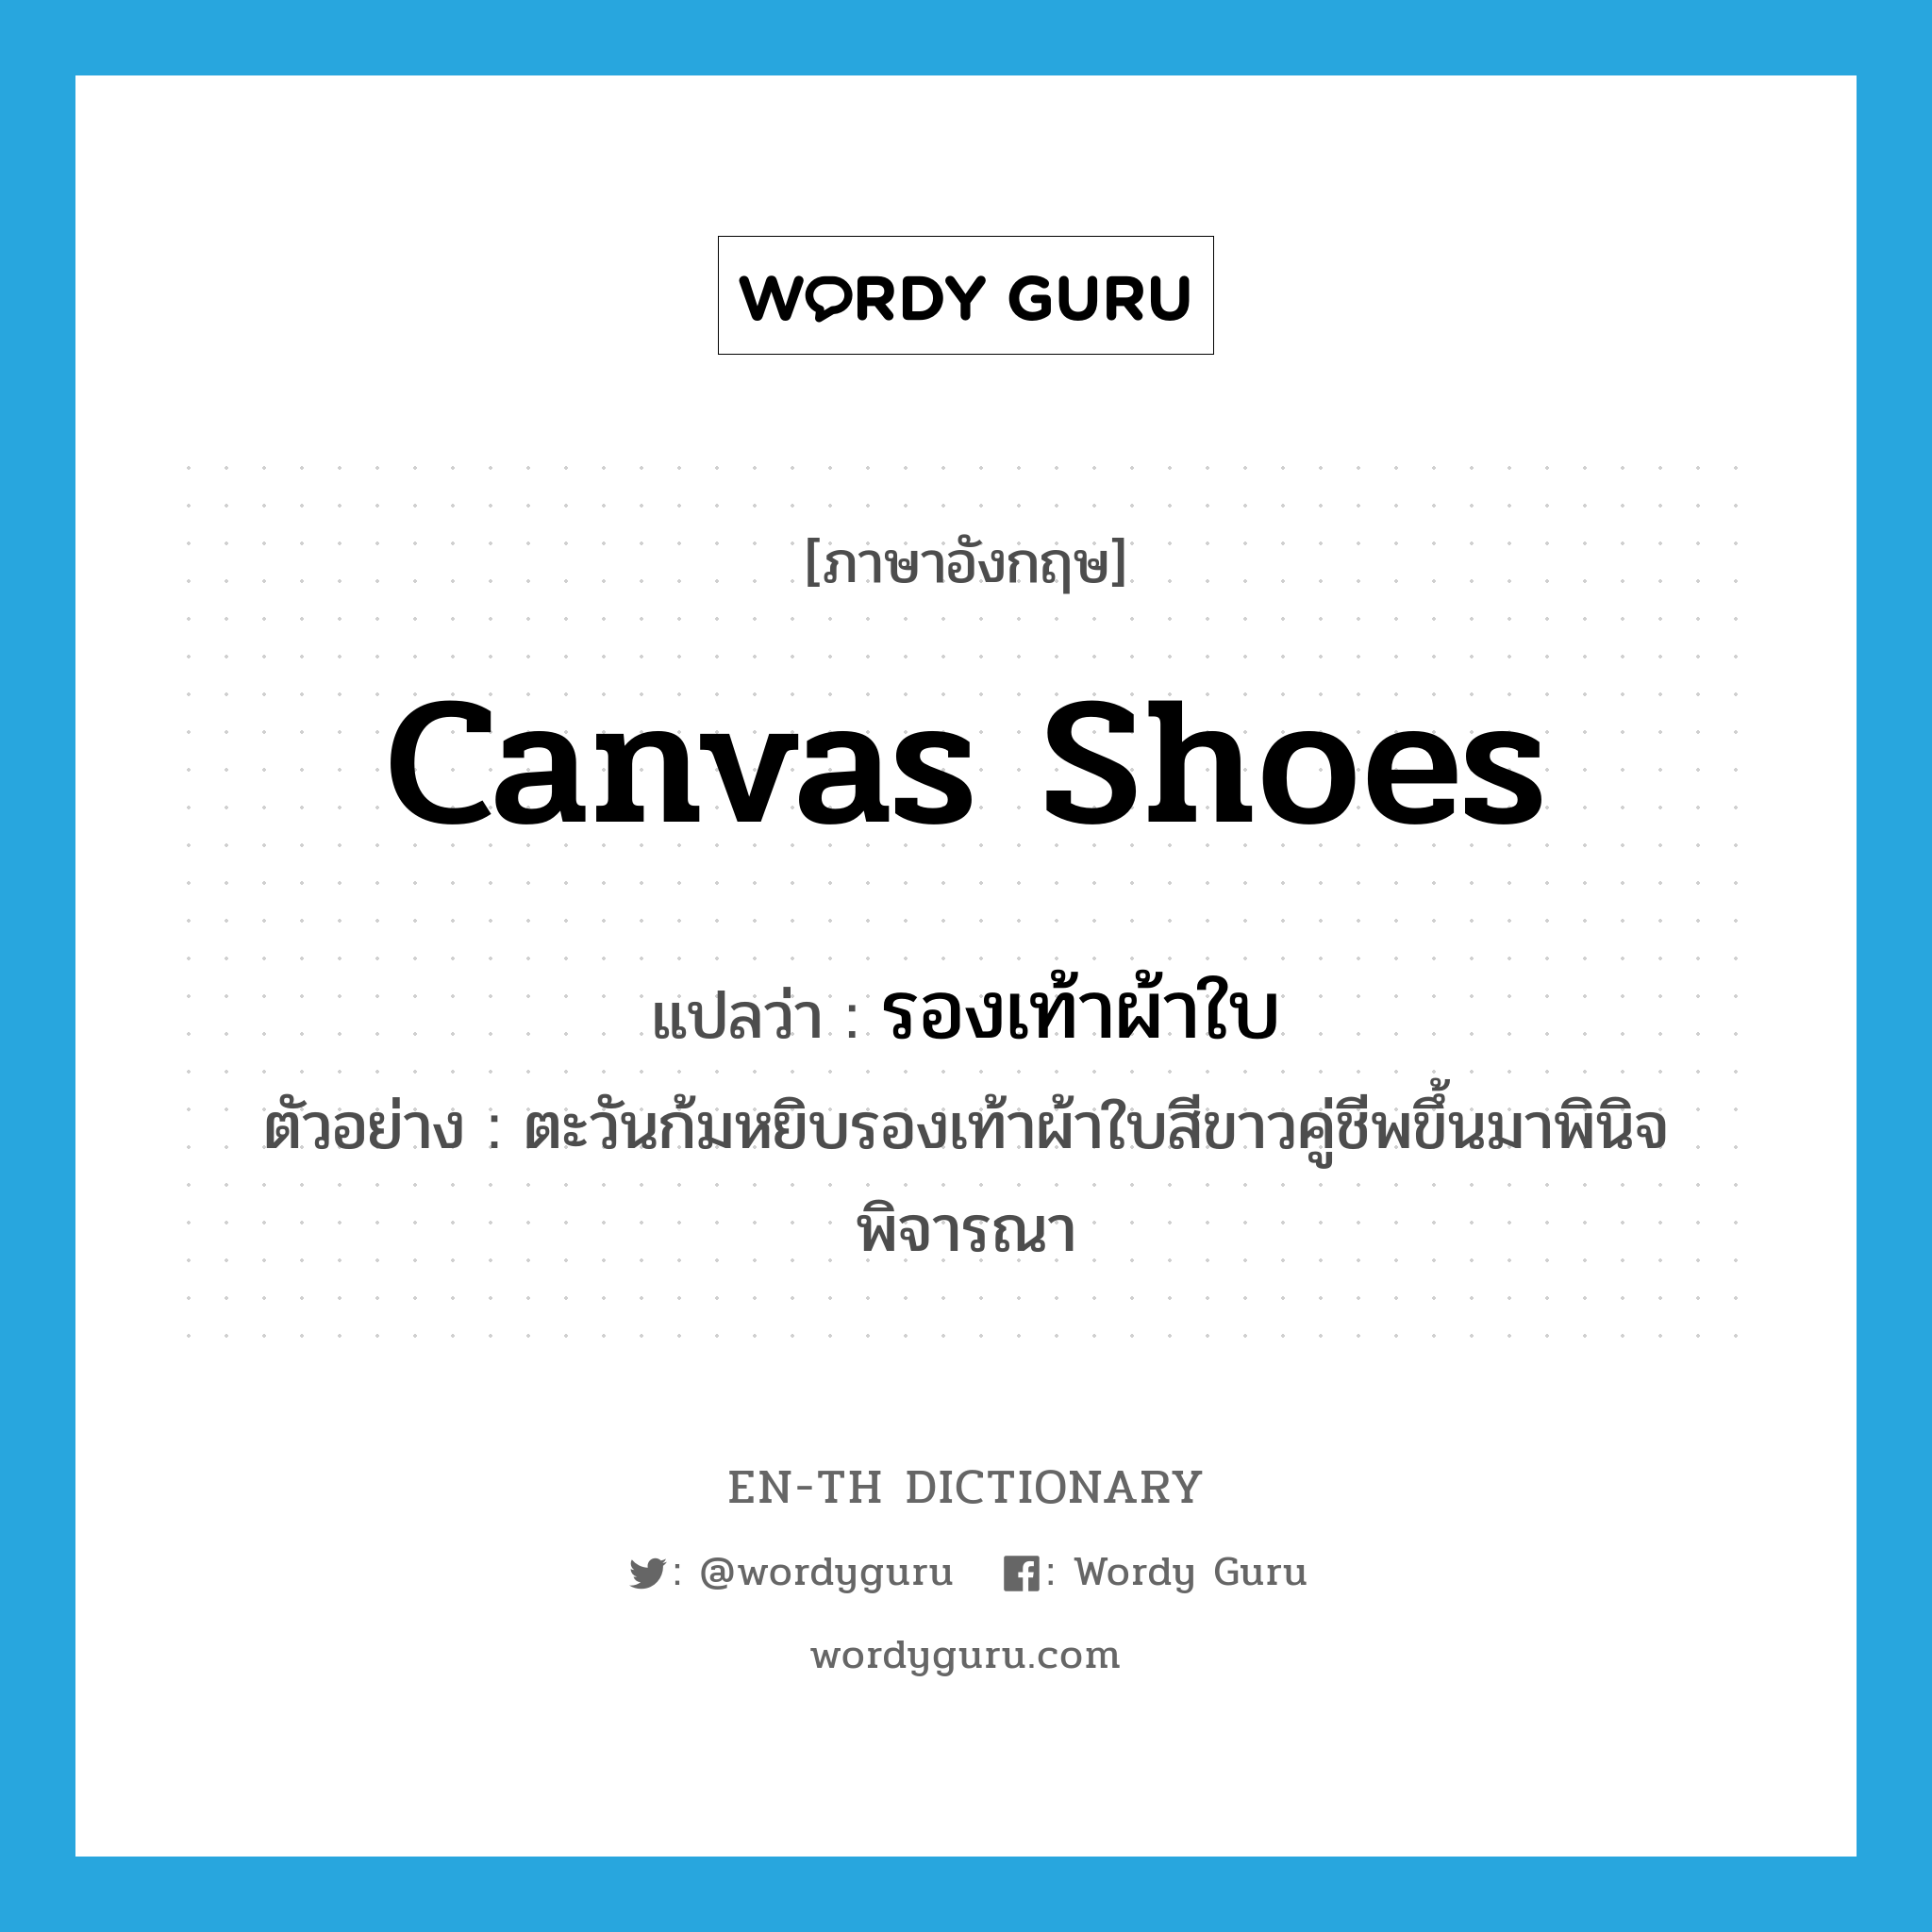 canvas shoes แปลว่า?, คำศัพท์ภาษาอังกฤษ canvas shoes แปลว่า รองเท้าผ้าใบ ประเภท N ตัวอย่าง ตะวันก้มหยิบรองเท้าผ้าใบสีขาวคู่ชีพขึ้นมาพินิจพิจารณา หมวด N